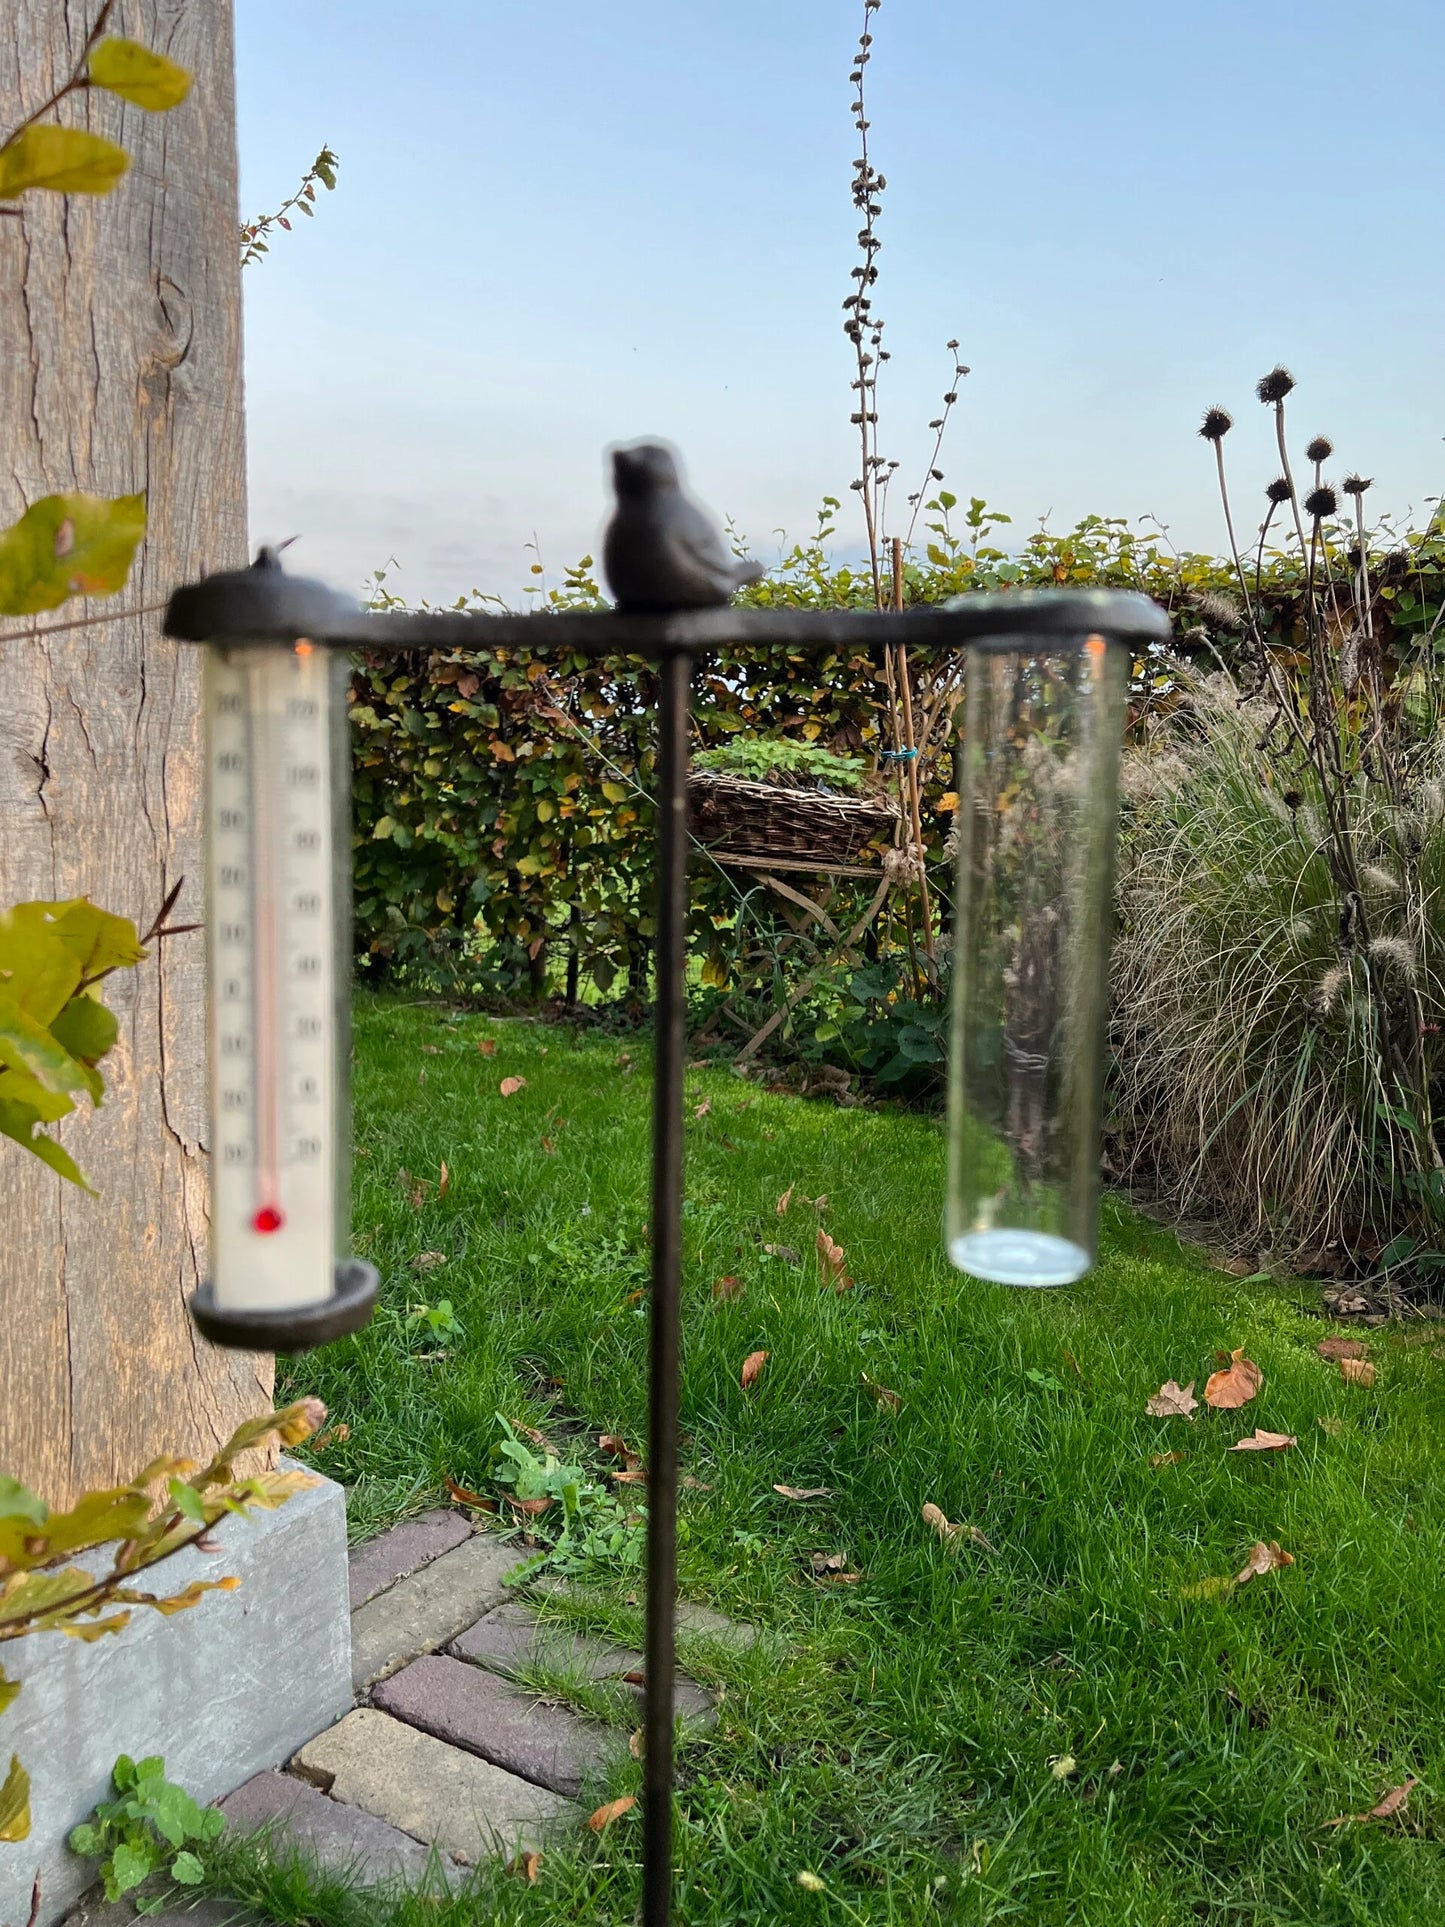 Rain/Temperature meter of cast iron